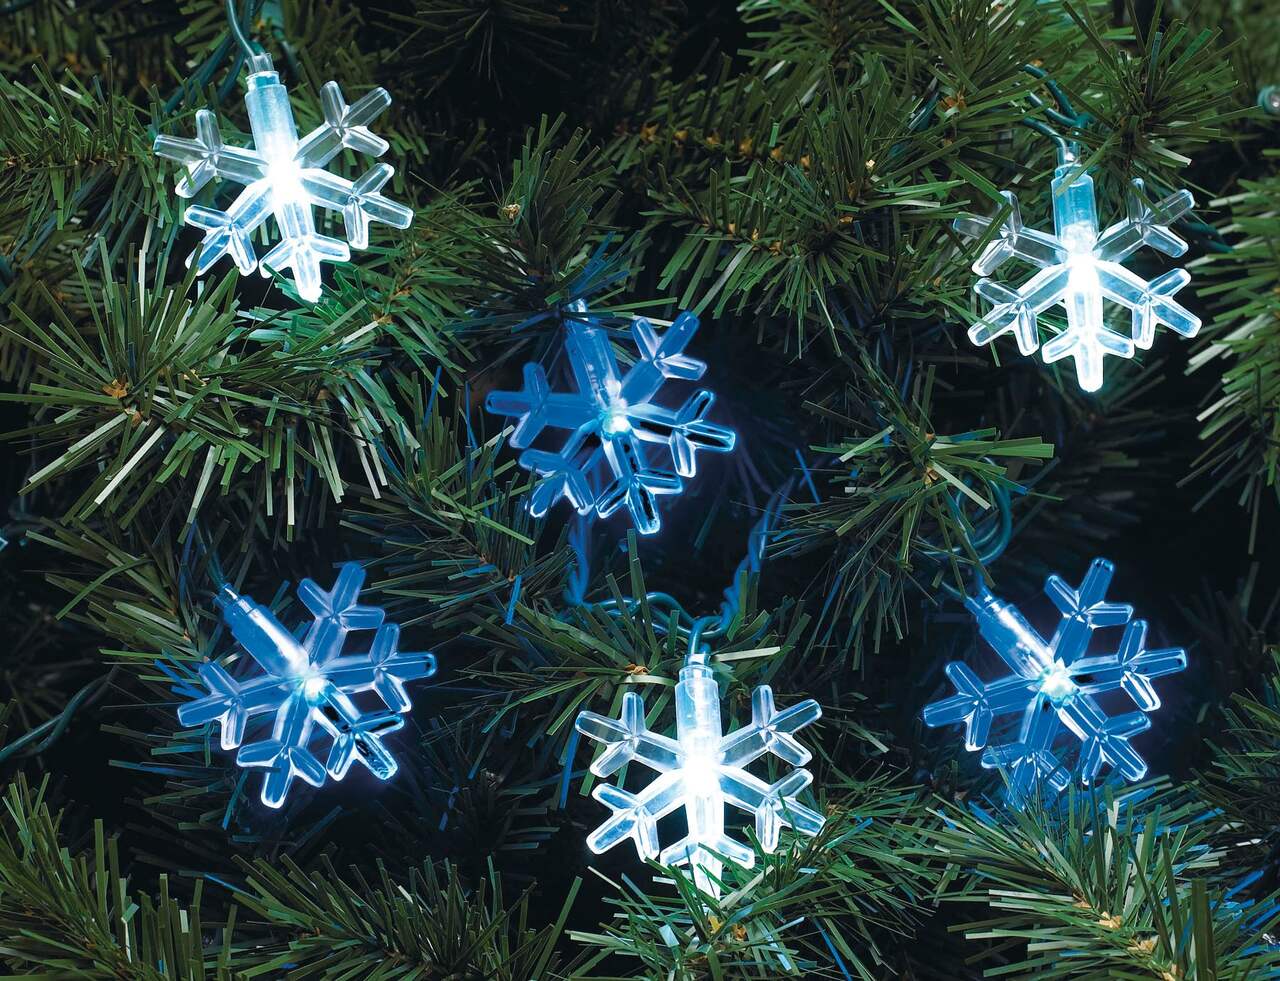 BESTA - Lumières de Flocon de Neige 6M 40LED Guirlande lumineuse LED Guirlandes  lumineuses flocon de neige de Noël de Neige à Piles Fairy Lights Décoration  Lumières Blanches Chaudes - Guirlandes lumineuses 